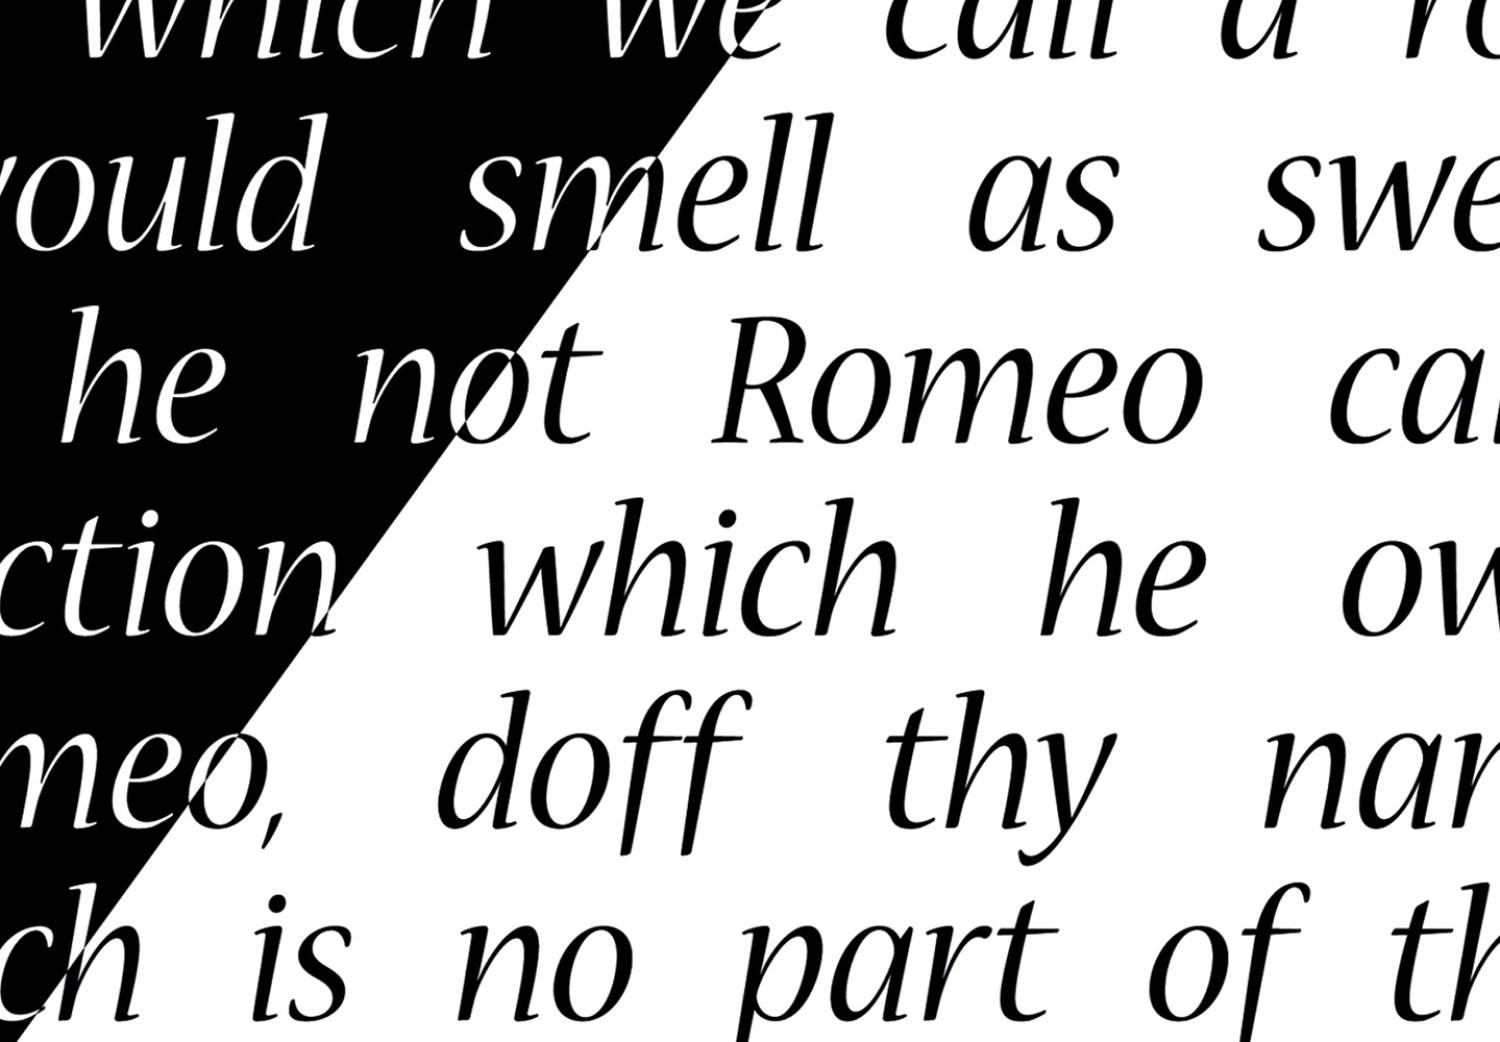 Poster Romeo y Julieta - composición romántica de Shakespeare